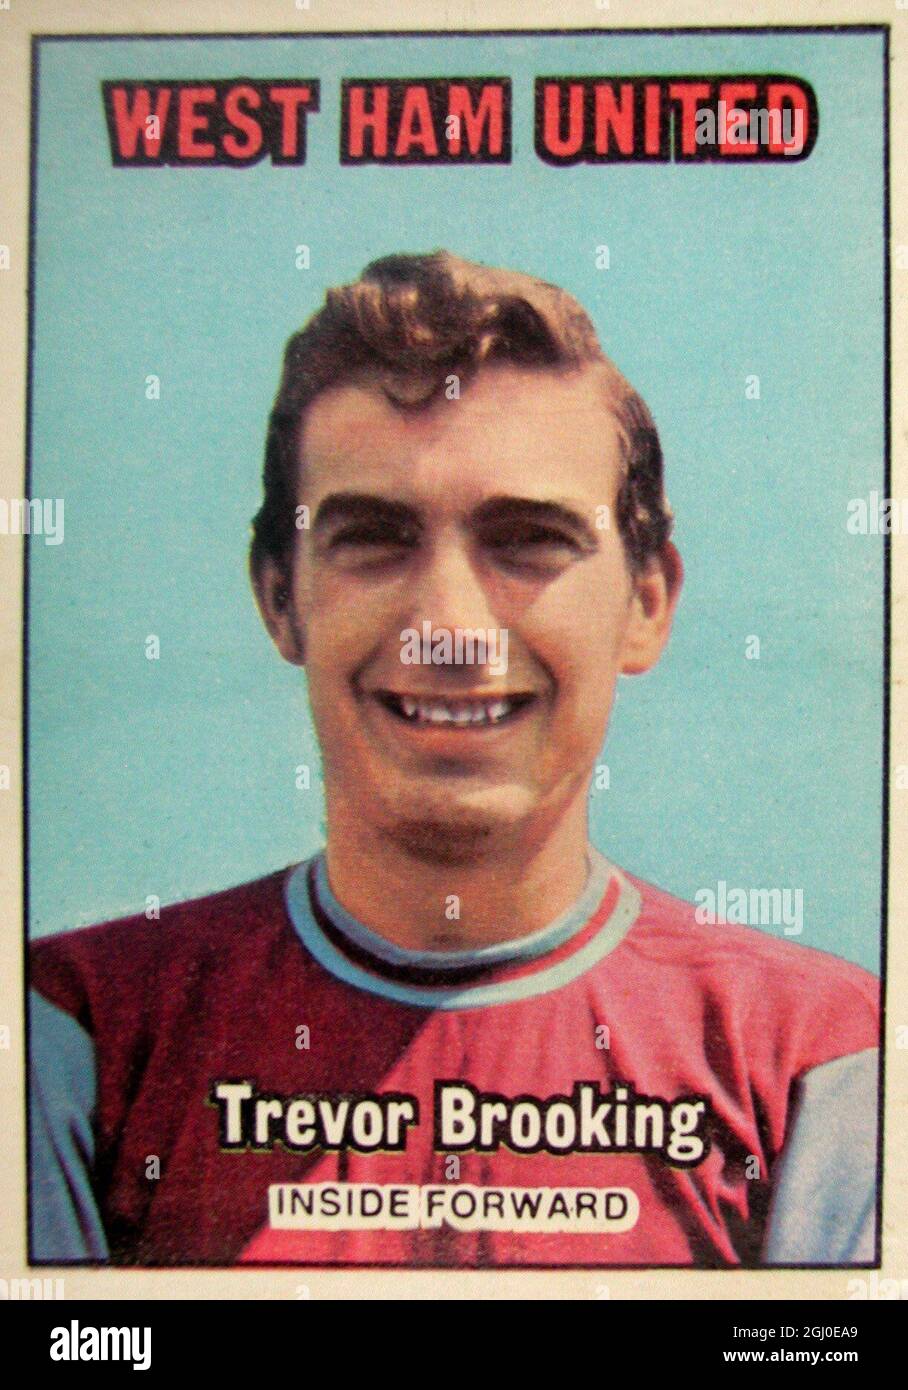 Trevor Brooking - West Ham vereint einen eleganten Mittelstürmer, kehrte Brooking in der vergangenen Saison mit großem Erfolg in eine Mittelfeldrolle zurück, nachdem er ursprünglich als Stürmer in die Seite von West Ham eingeführt worden war. Schnell, hat er die Fähigkeit, mehrere Männer zu schlagen, und ist ein großer Gewinn bei der Festlegung von Zielen für den Rest der Vorwärtslinie. Stockfoto